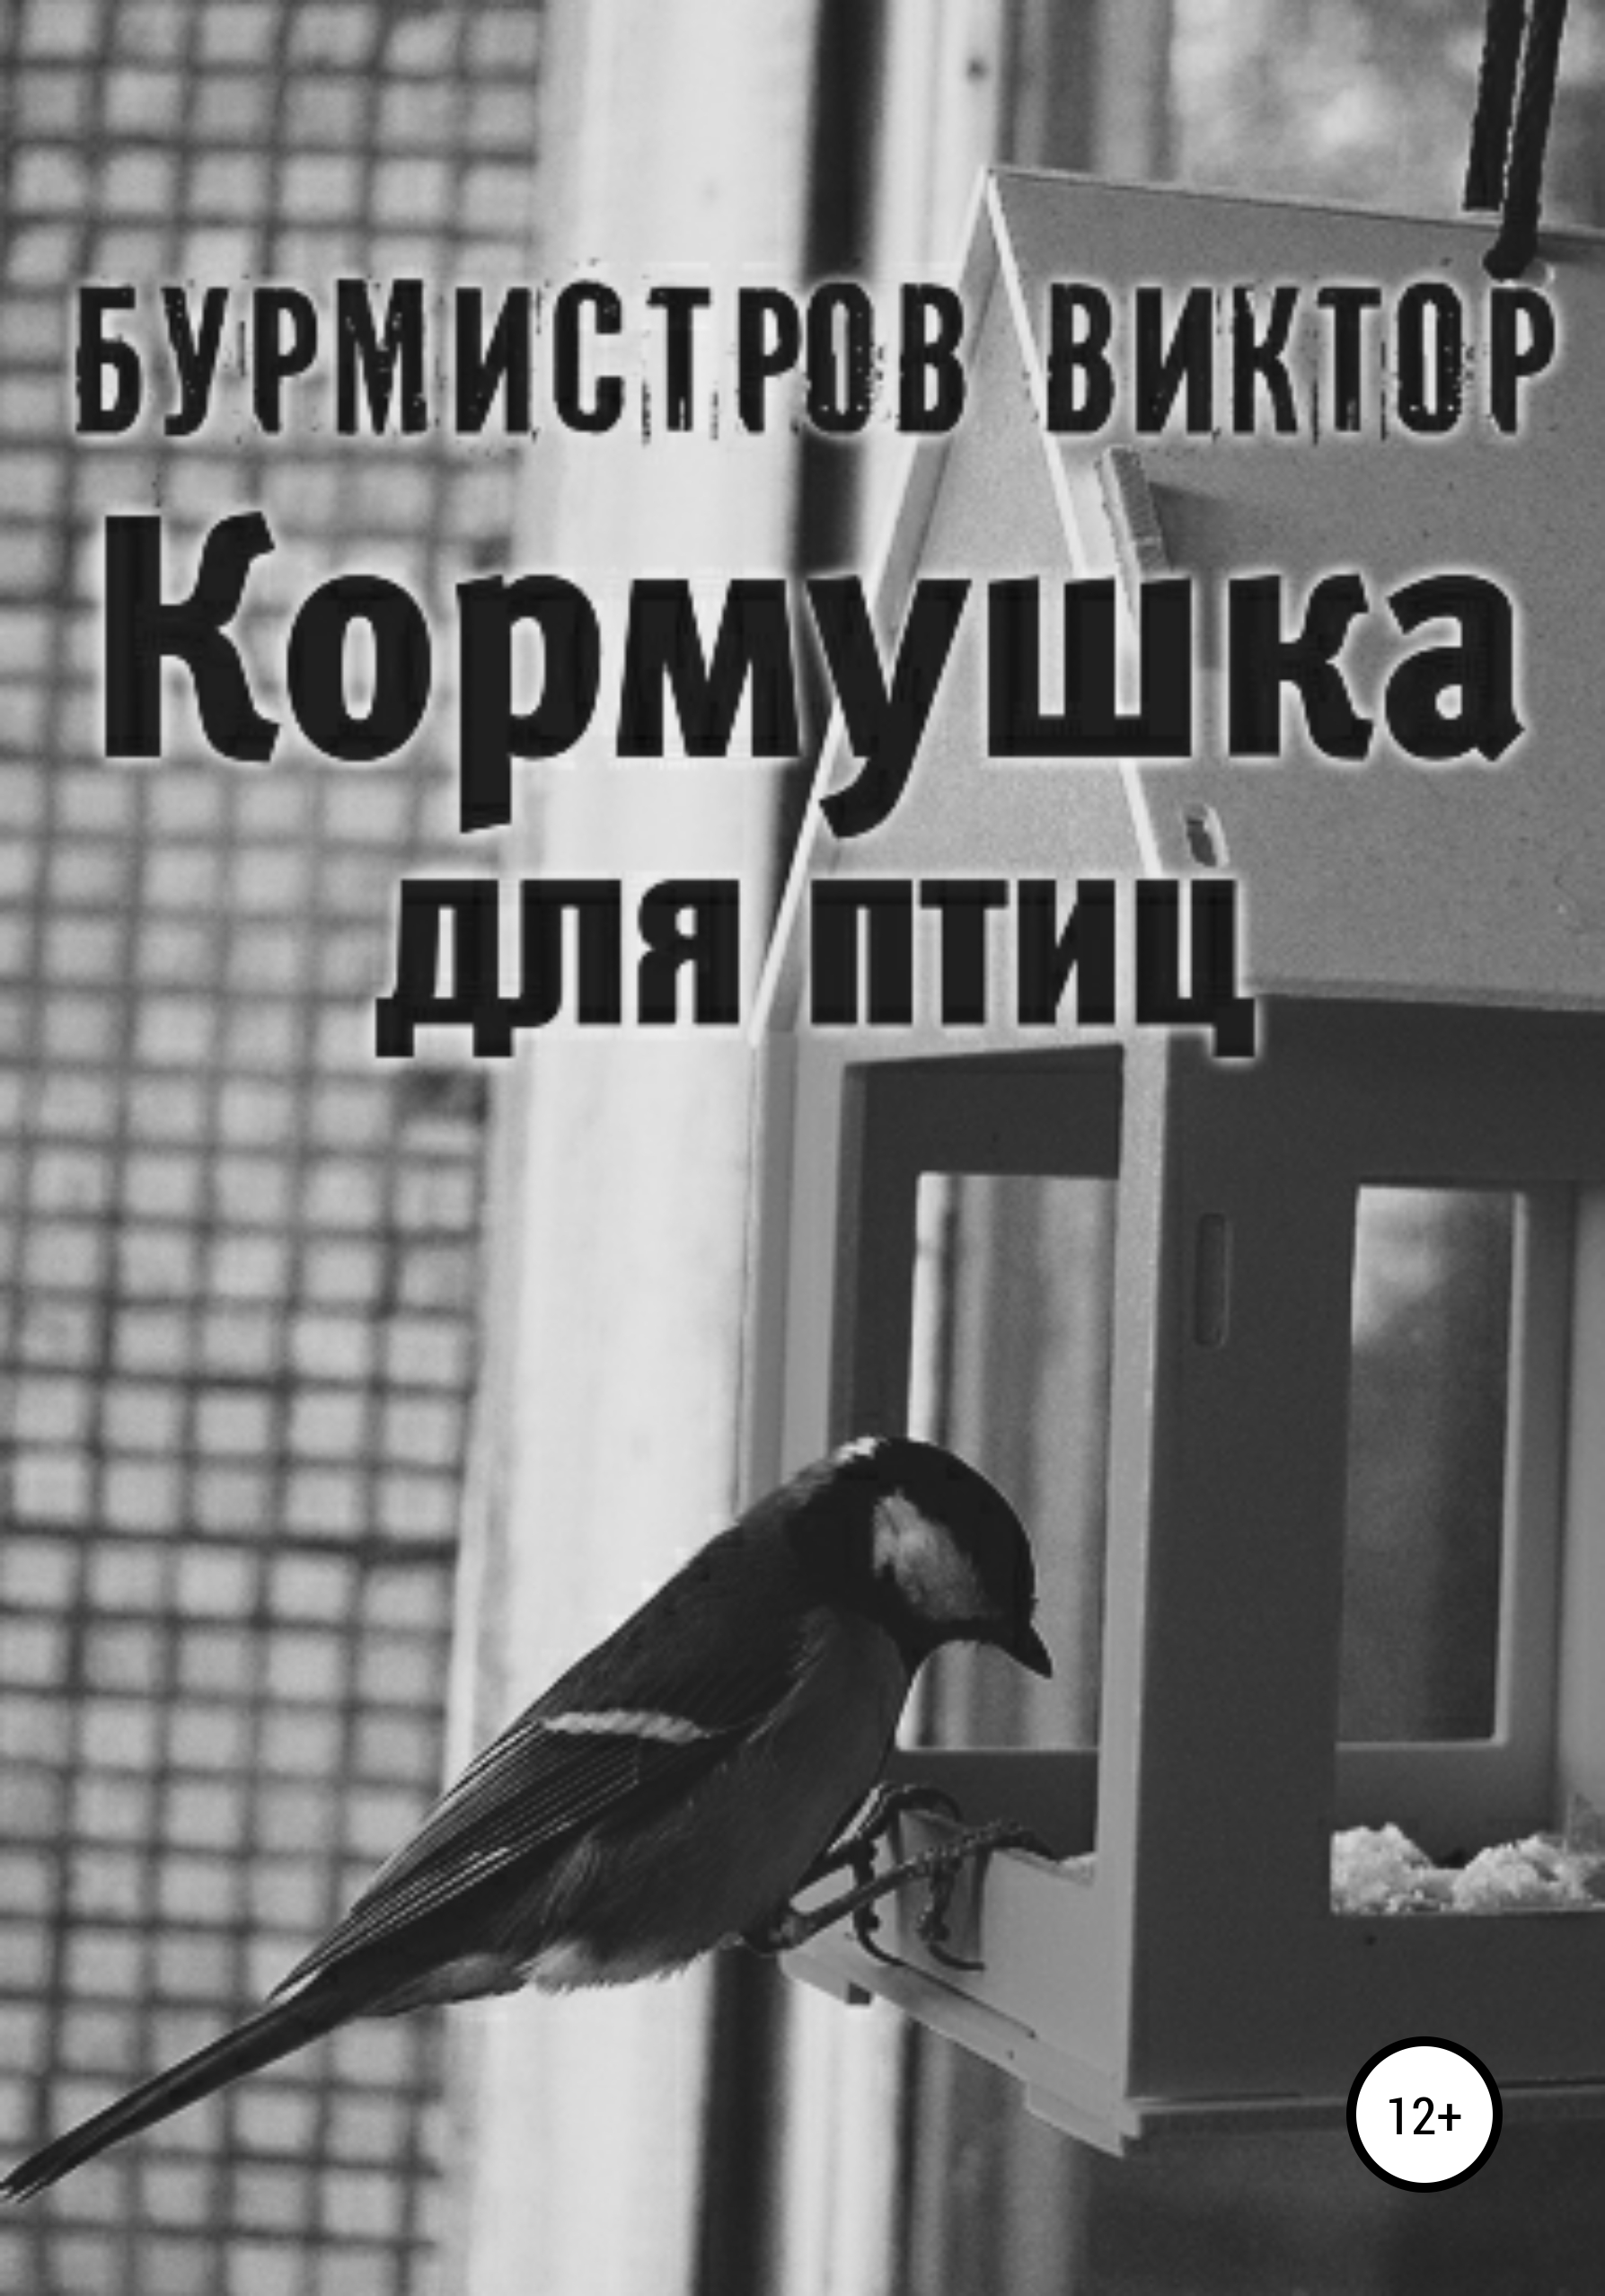 Кормушка для птиц – Виктор Геннадьевич Бурмистров